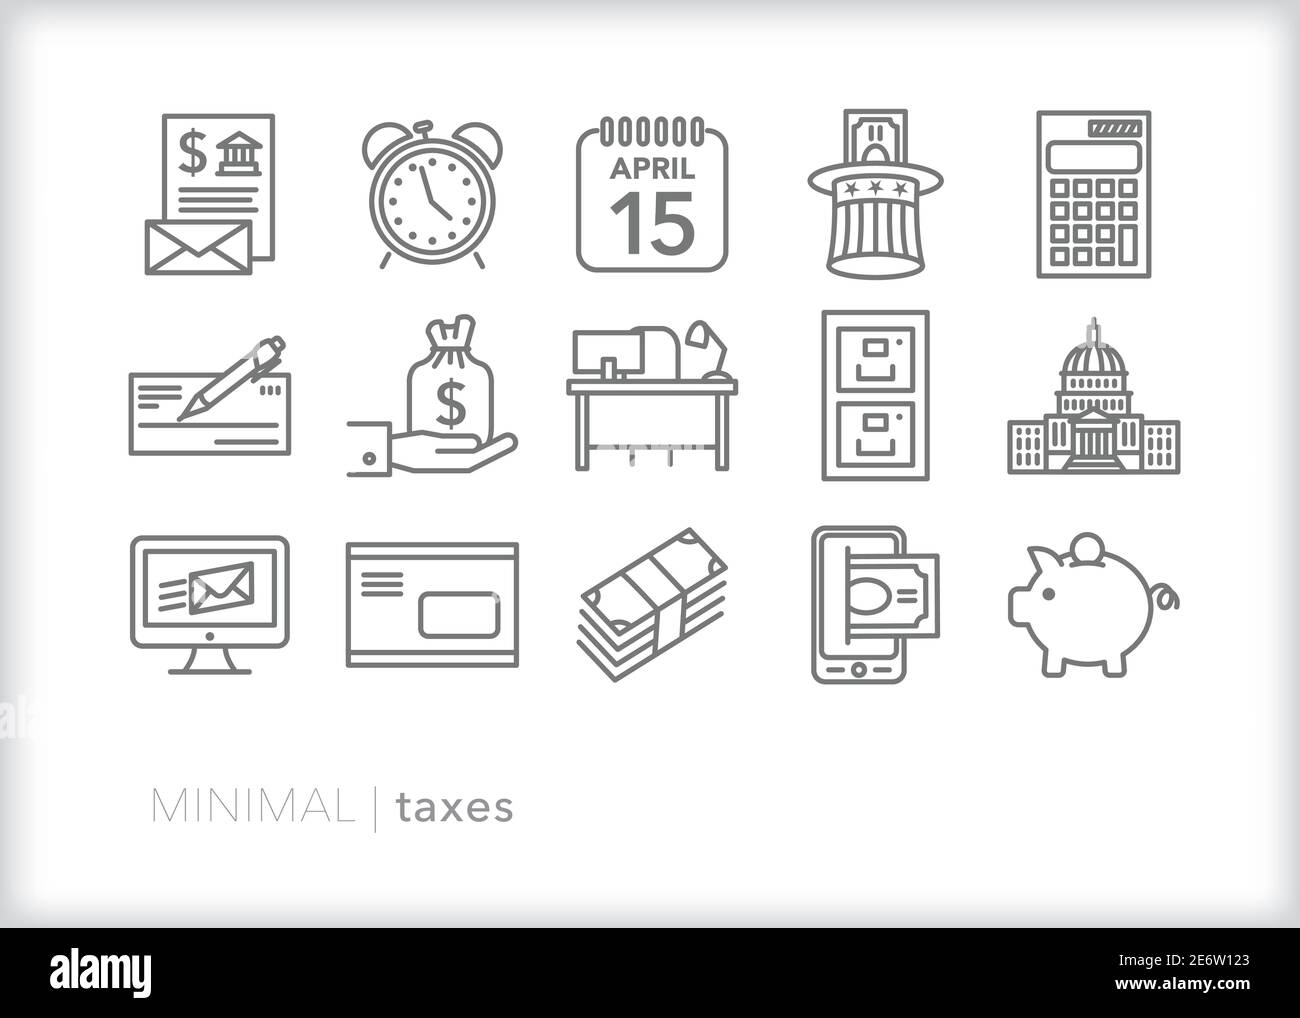 Set von 15 Steuern Zeile Symbole für den Empfang von Steuern fällig Rechnung, immer Hilfe bei der Buchhaltung, Finanzen, Steuern zahlen und eine Rückerstattung Stock Vektor